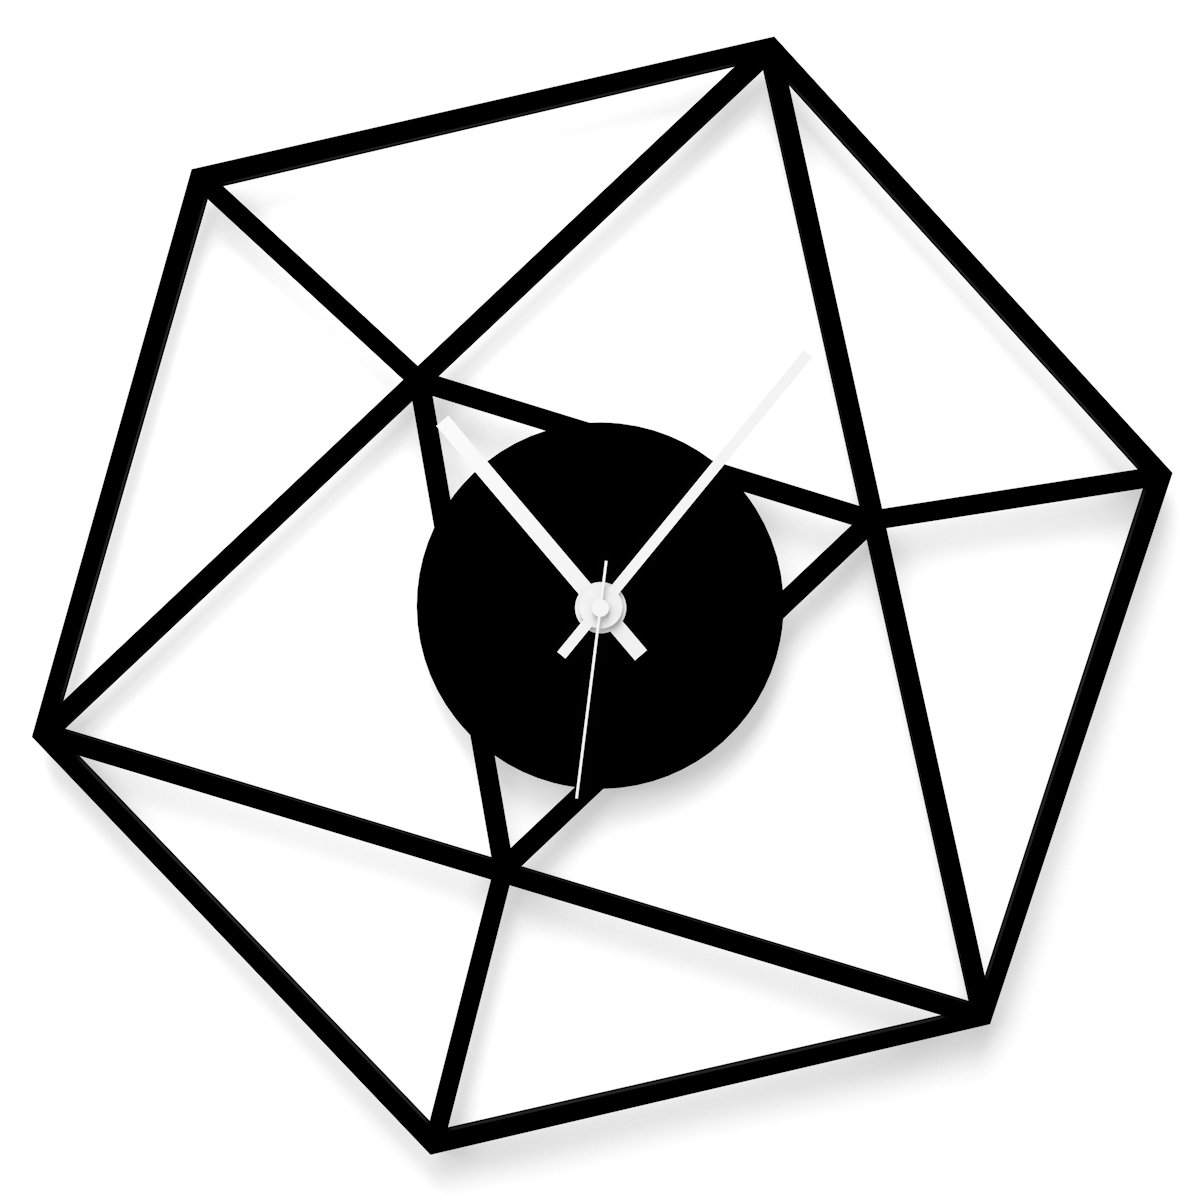 WANDKINGS Wanduhr Hexagon aus Acrylglas, in 11 Farben erhältlich (Farbe: Uhr = Schwarz matt; Zeiger = Weiß)